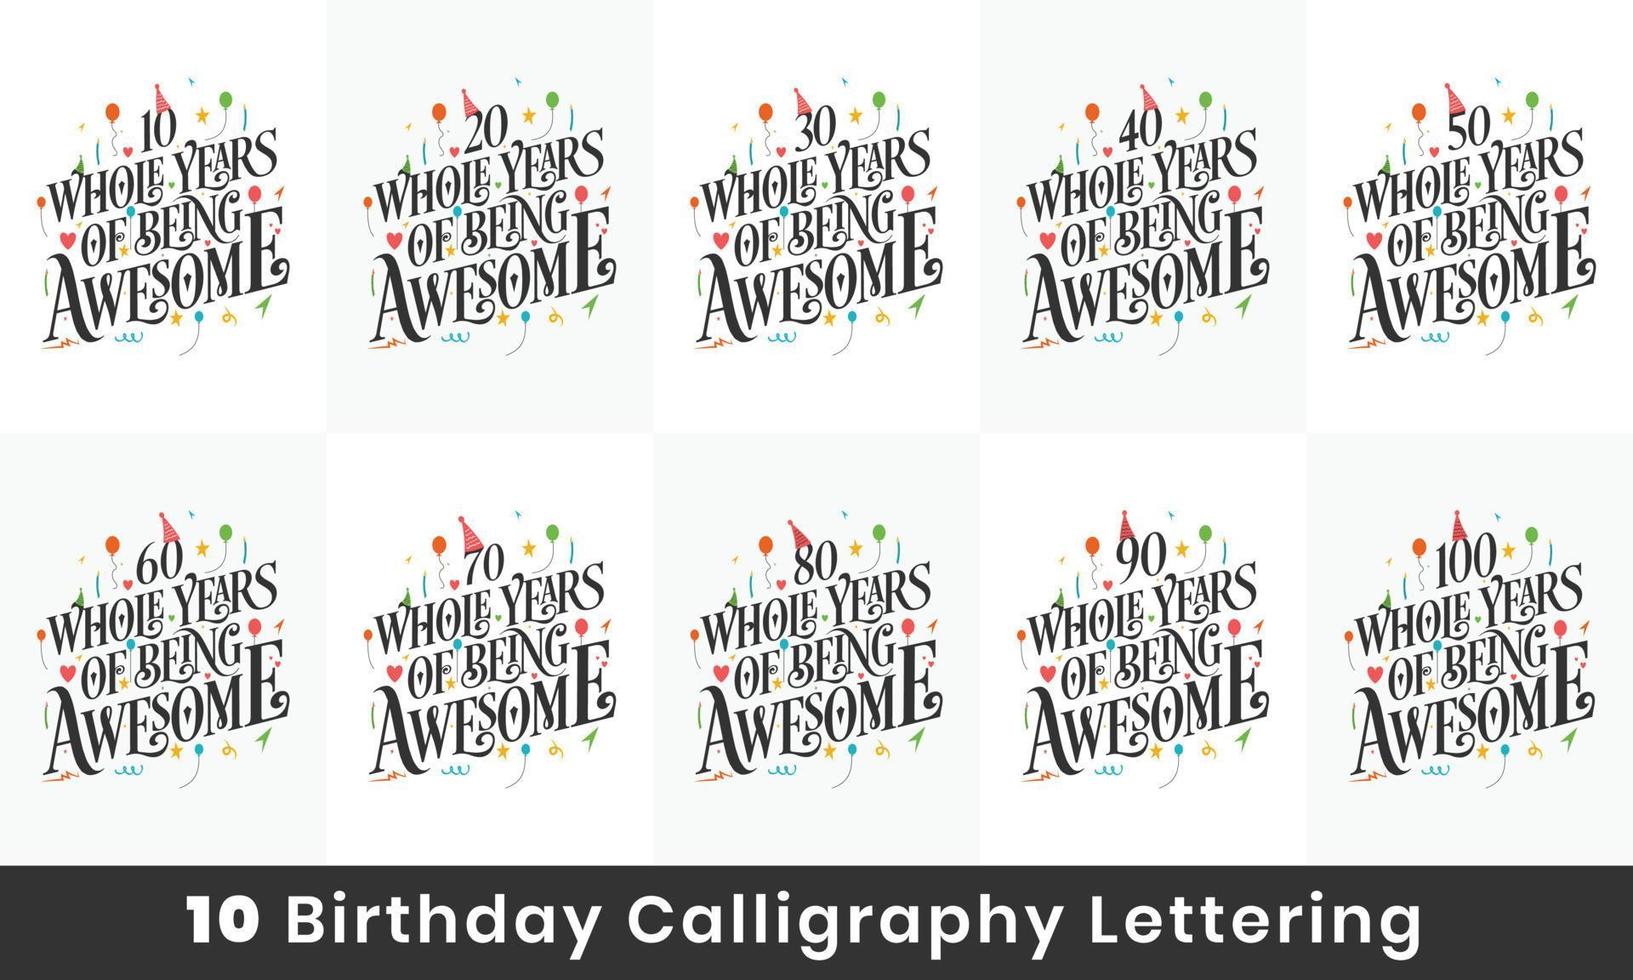 pacchetto di design di compleanno. Pacchetto tipografico per la celebrazione di 10 citazioni di compleanno. 10, 20, 30, 40, 50, 60, 70, 80, 90, 100 anni interi di essere fantastici. vettore